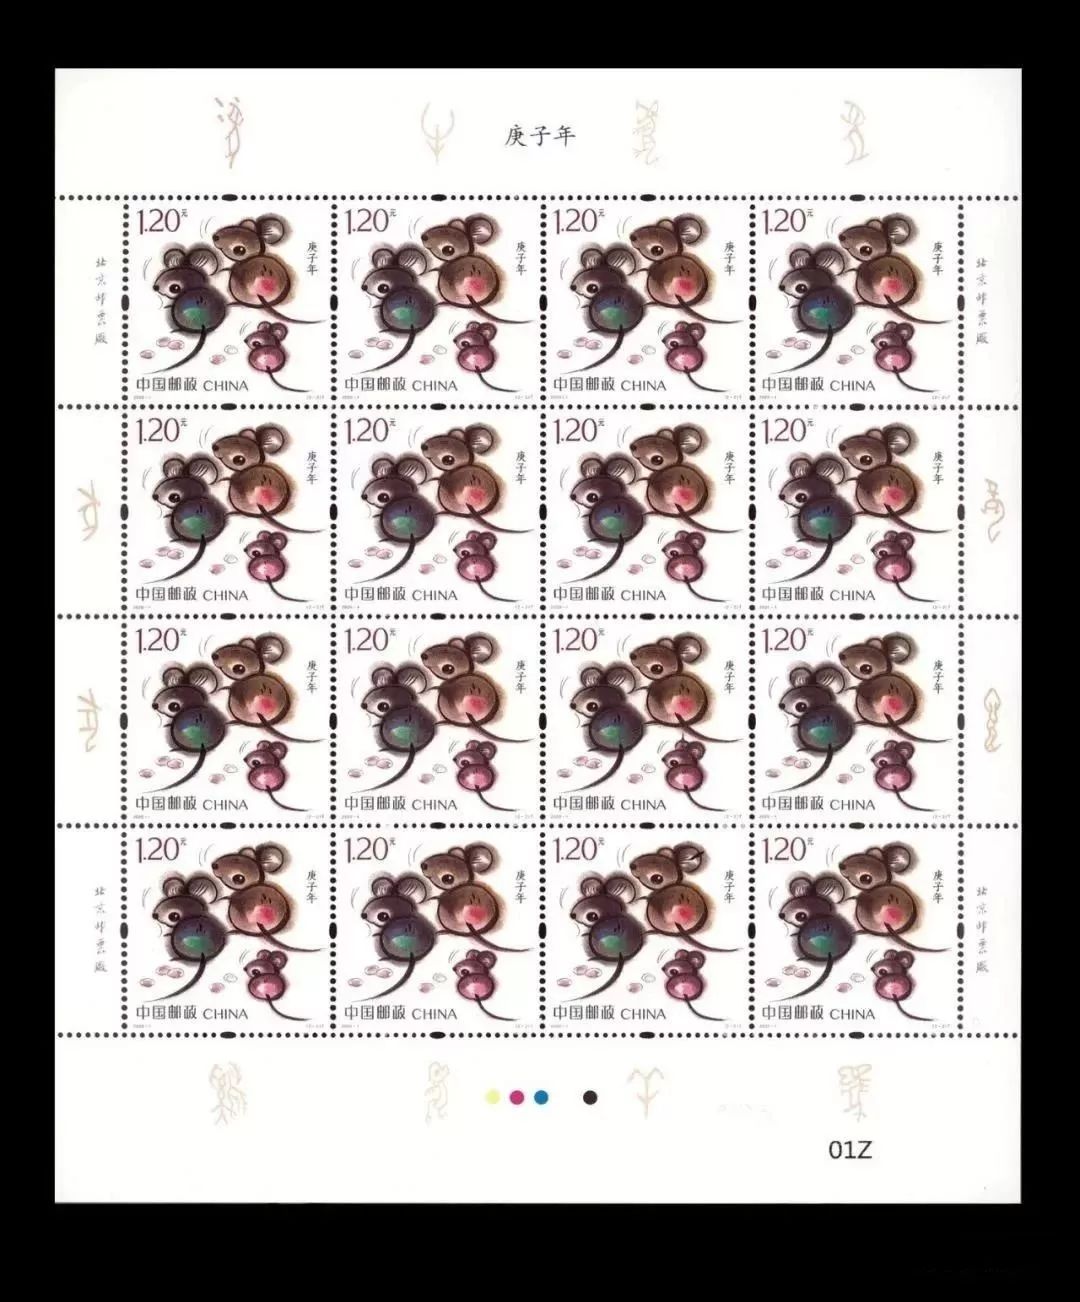 【新品】2020鼠年生肖邮票,《庚子年》特种邮票开始预定